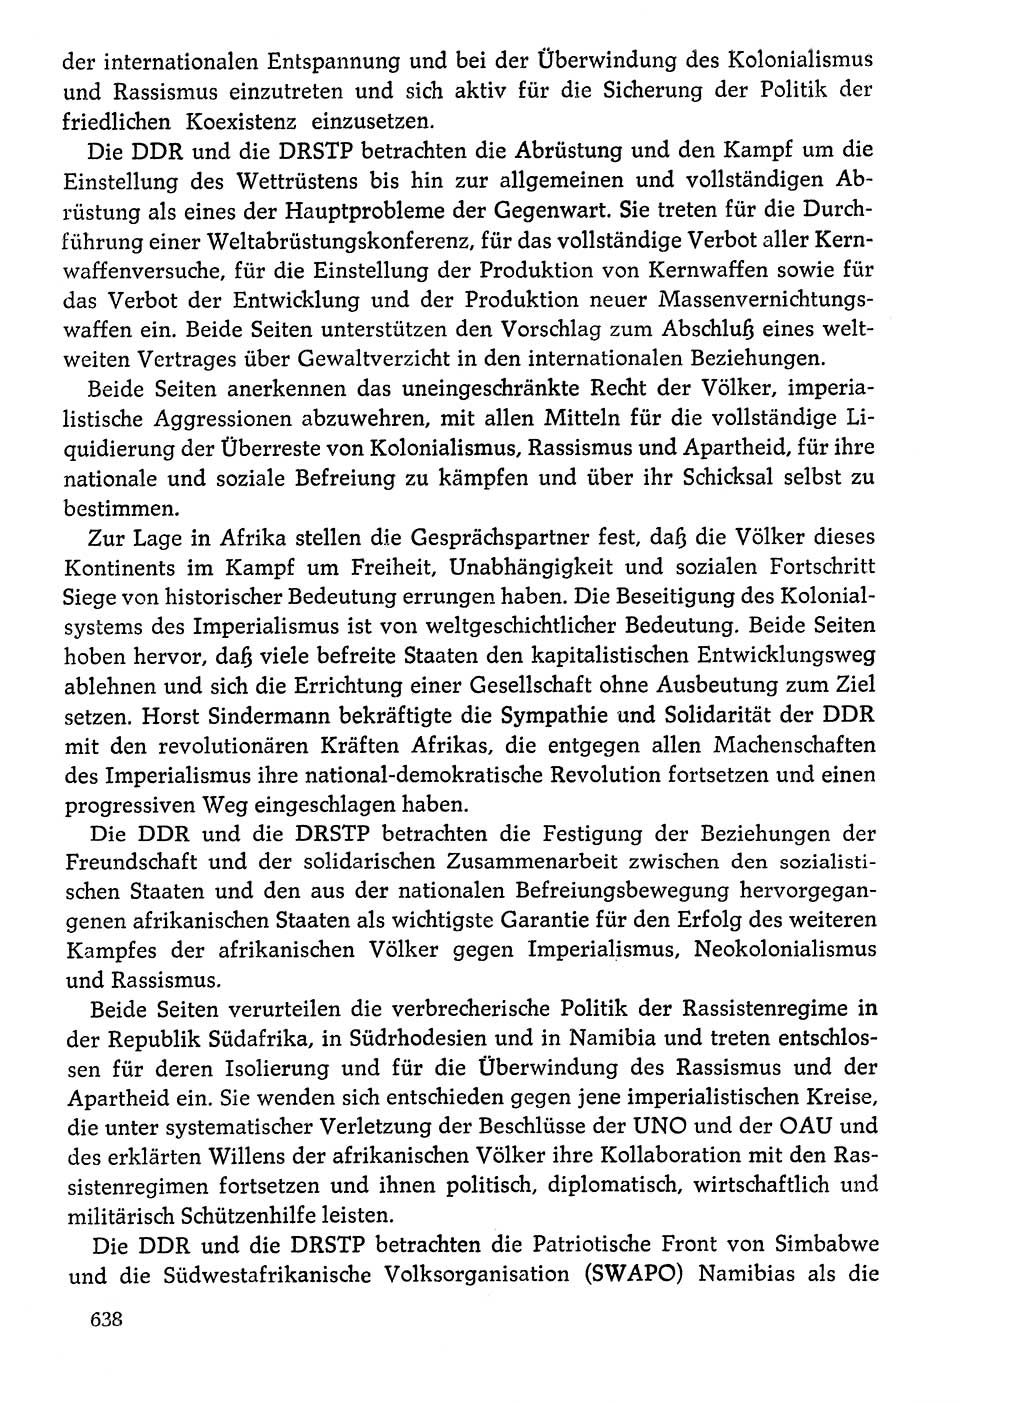 Dokumente der Sozialistischen Einheitspartei Deutschlands (SED) [Deutsche Demokratische Republik (DDR)] 1976-1977, Seite 638 (Dok. SED DDR 1976-1977, S. 638)